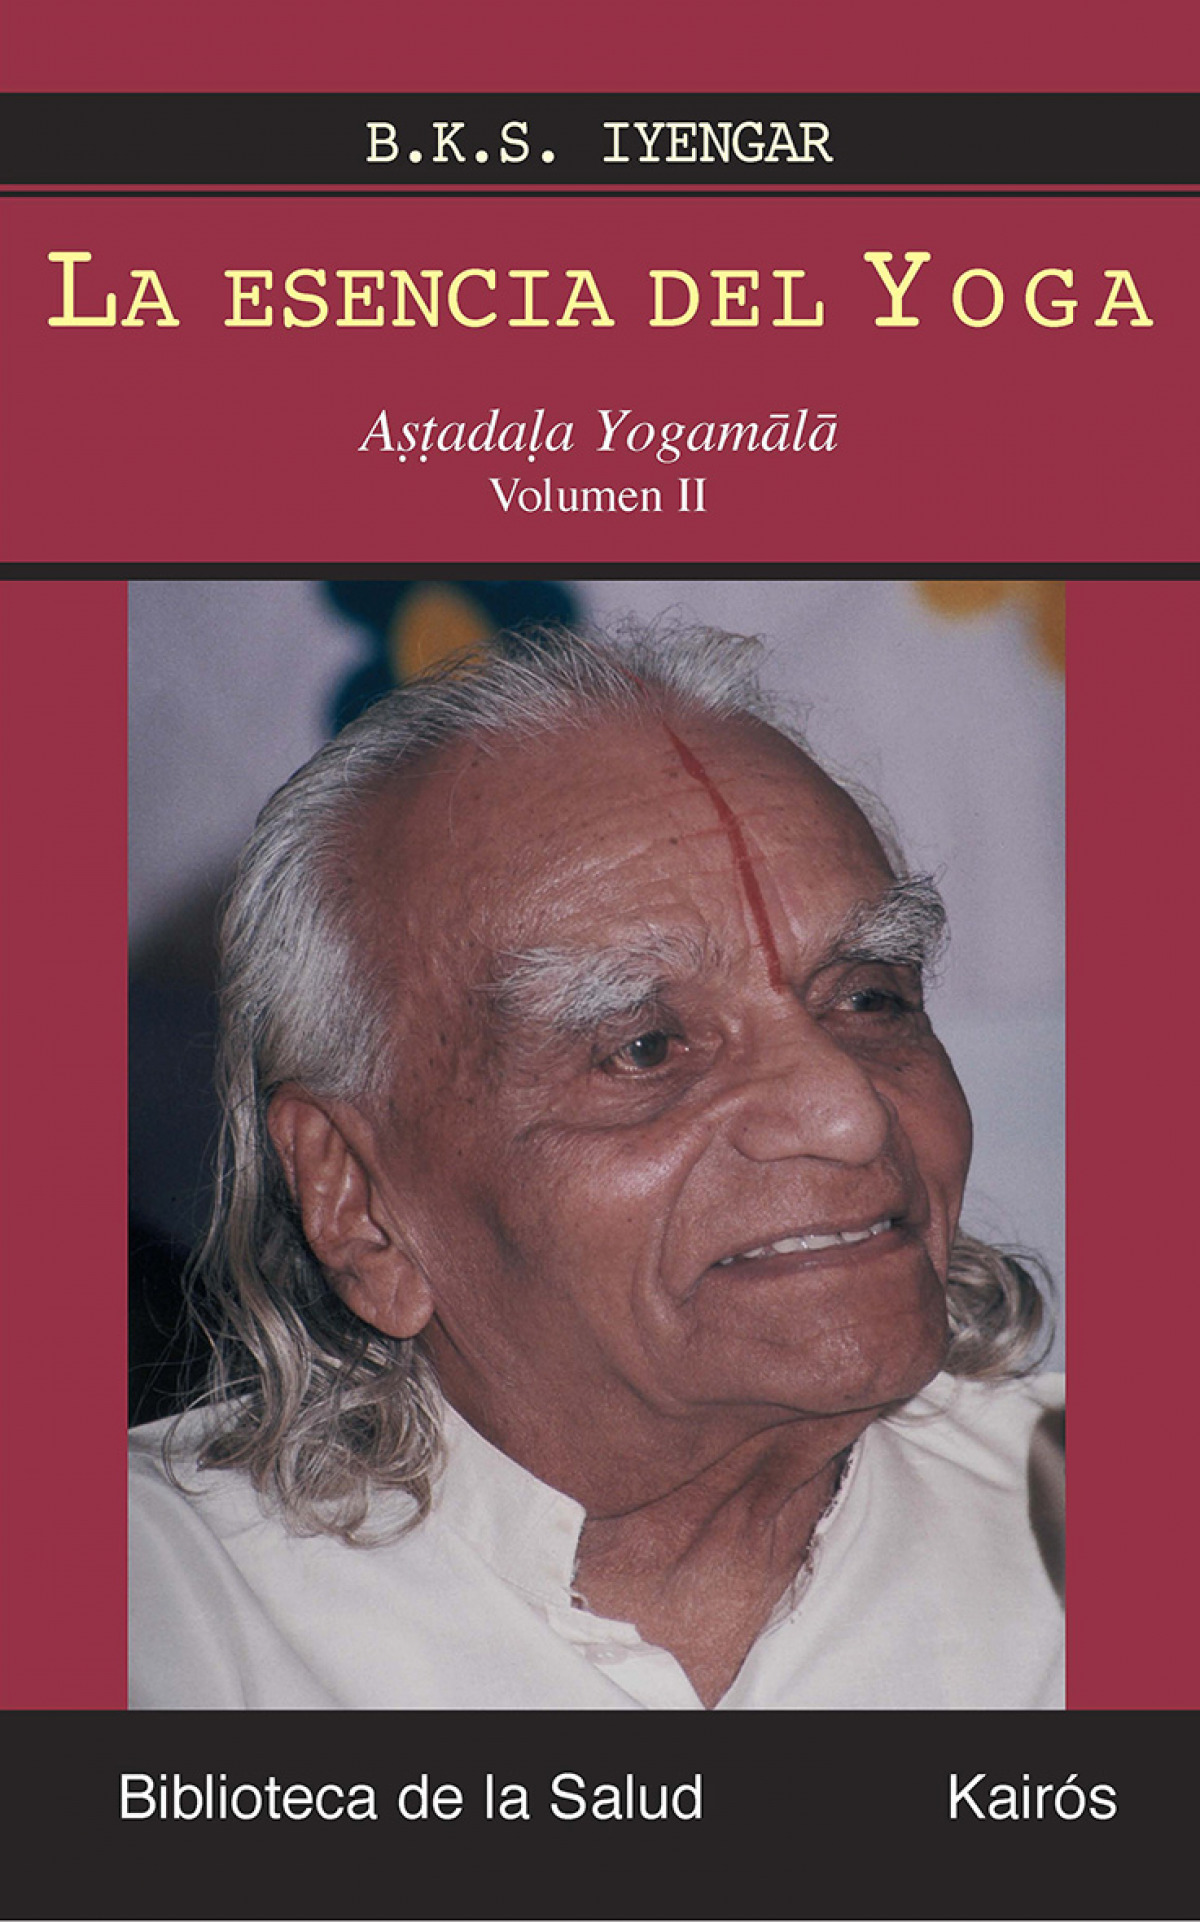 La esencia del Yoga II ASTADALA YOGAMALA - Iyengar, B.K.S.